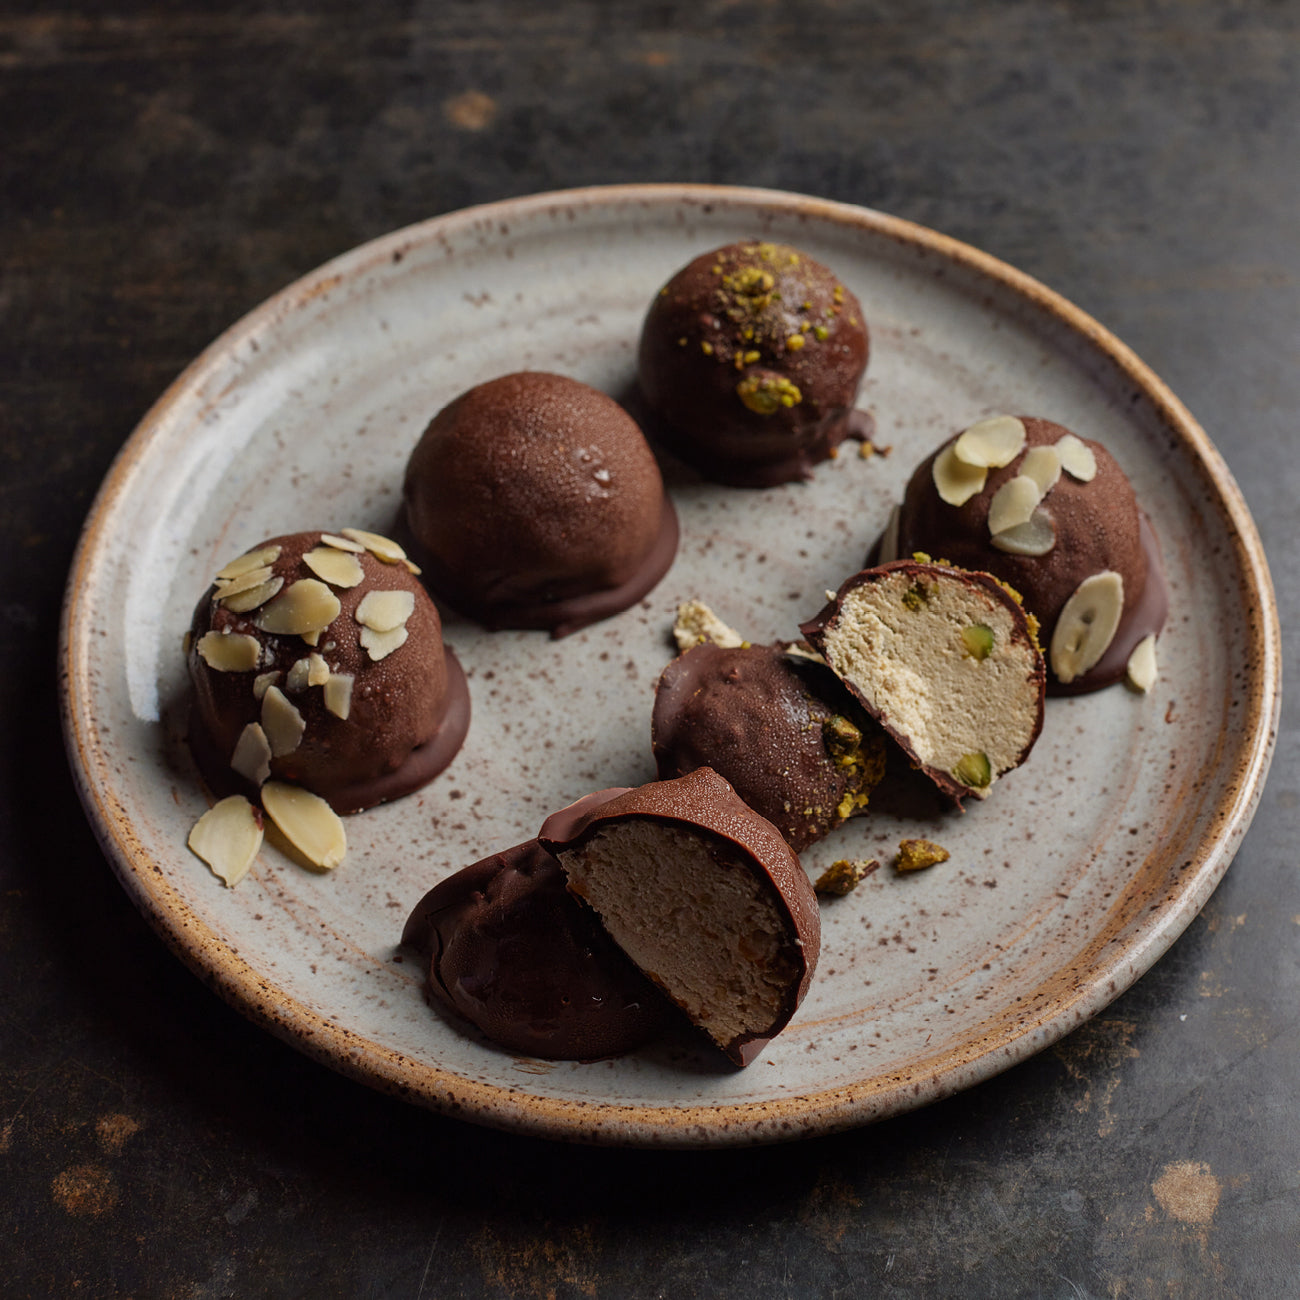 Pistachio-halva-chocolate truffles